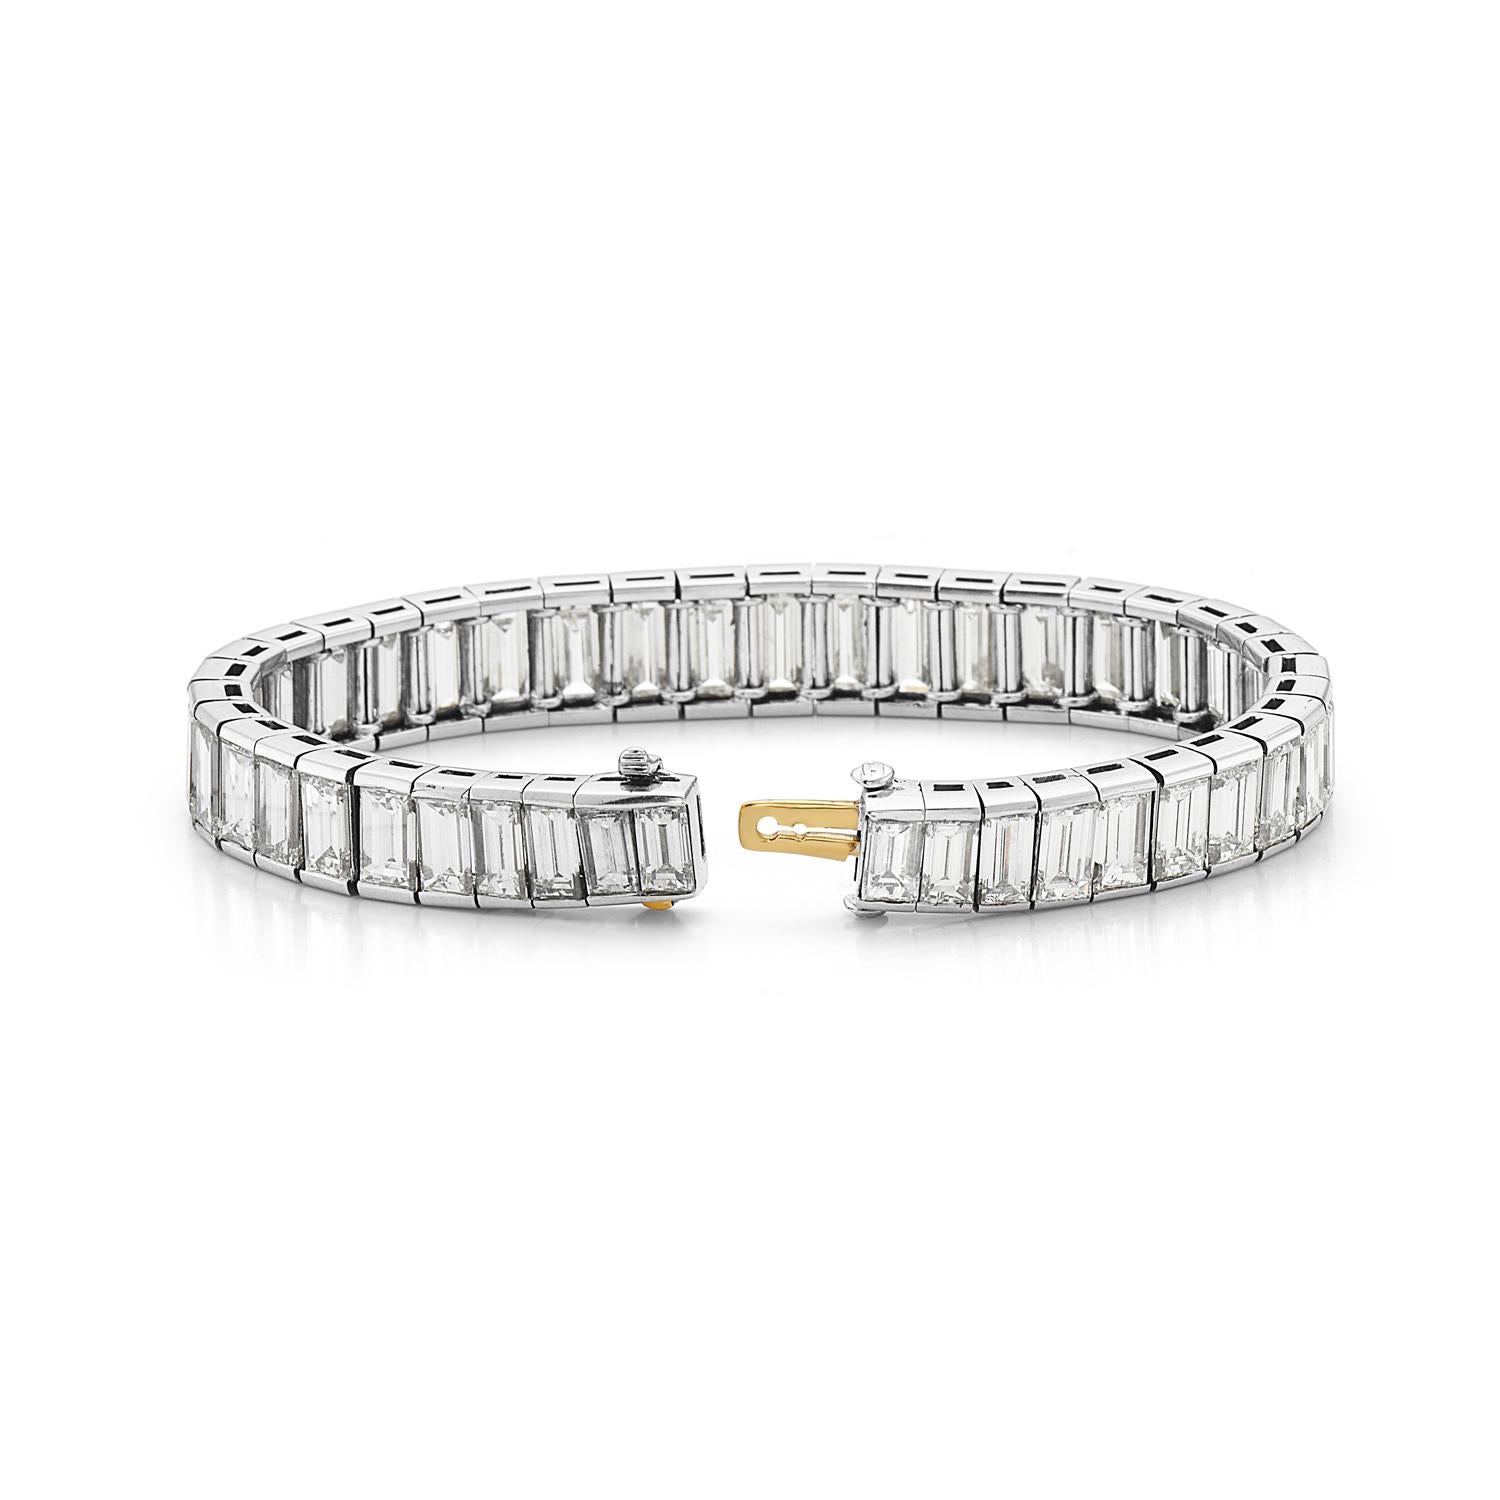 Dieses Armband besteht aus 38 Karat Diamanten im Baguetteschliff mit F-G VS-Abstufung und ist in Platin gefasst. Dieses Armband wird von den hochwertigsten italienischen Handwerkern hergestellt, wodurch es extrem flexibel ist und weiche, zarte